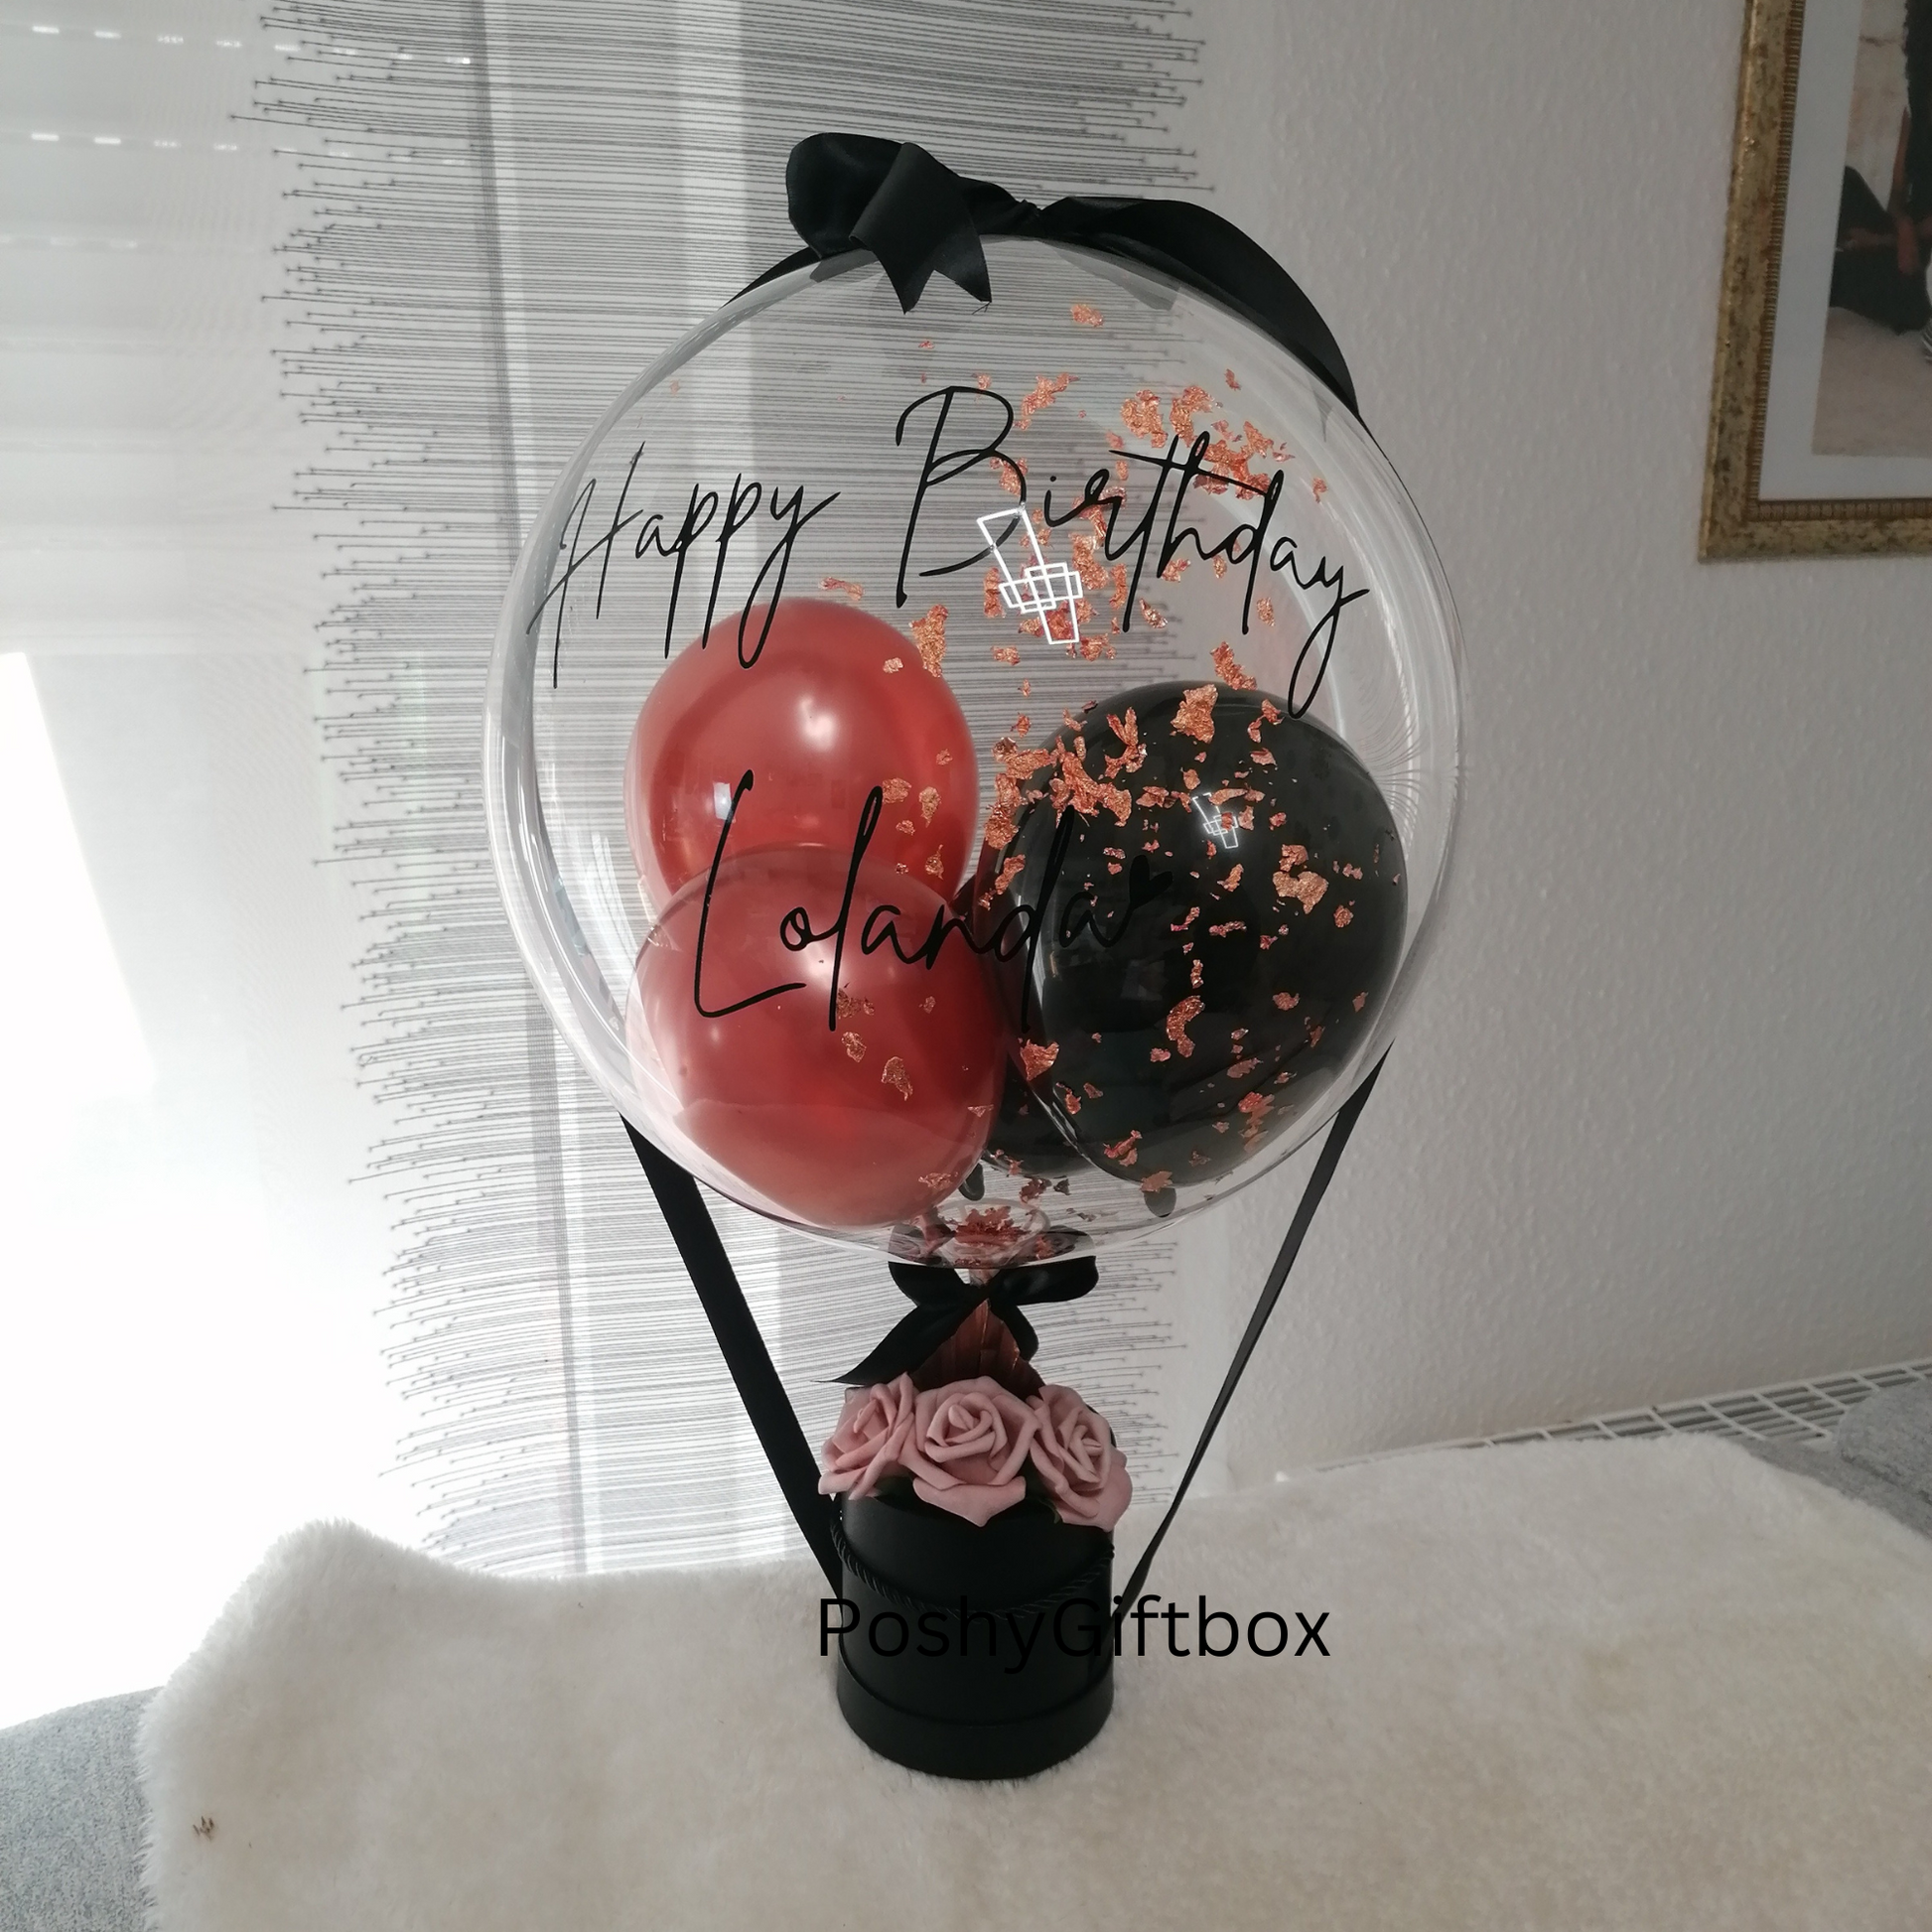 Ballon Geschenk/Valentinsgeschenk/Hochzeitsgeschenk/Geschenkbox für Frauen/Geburtstagsgeschenk Freundin/Mama/Schwester/Gute Besserung  PoshyGiftbox